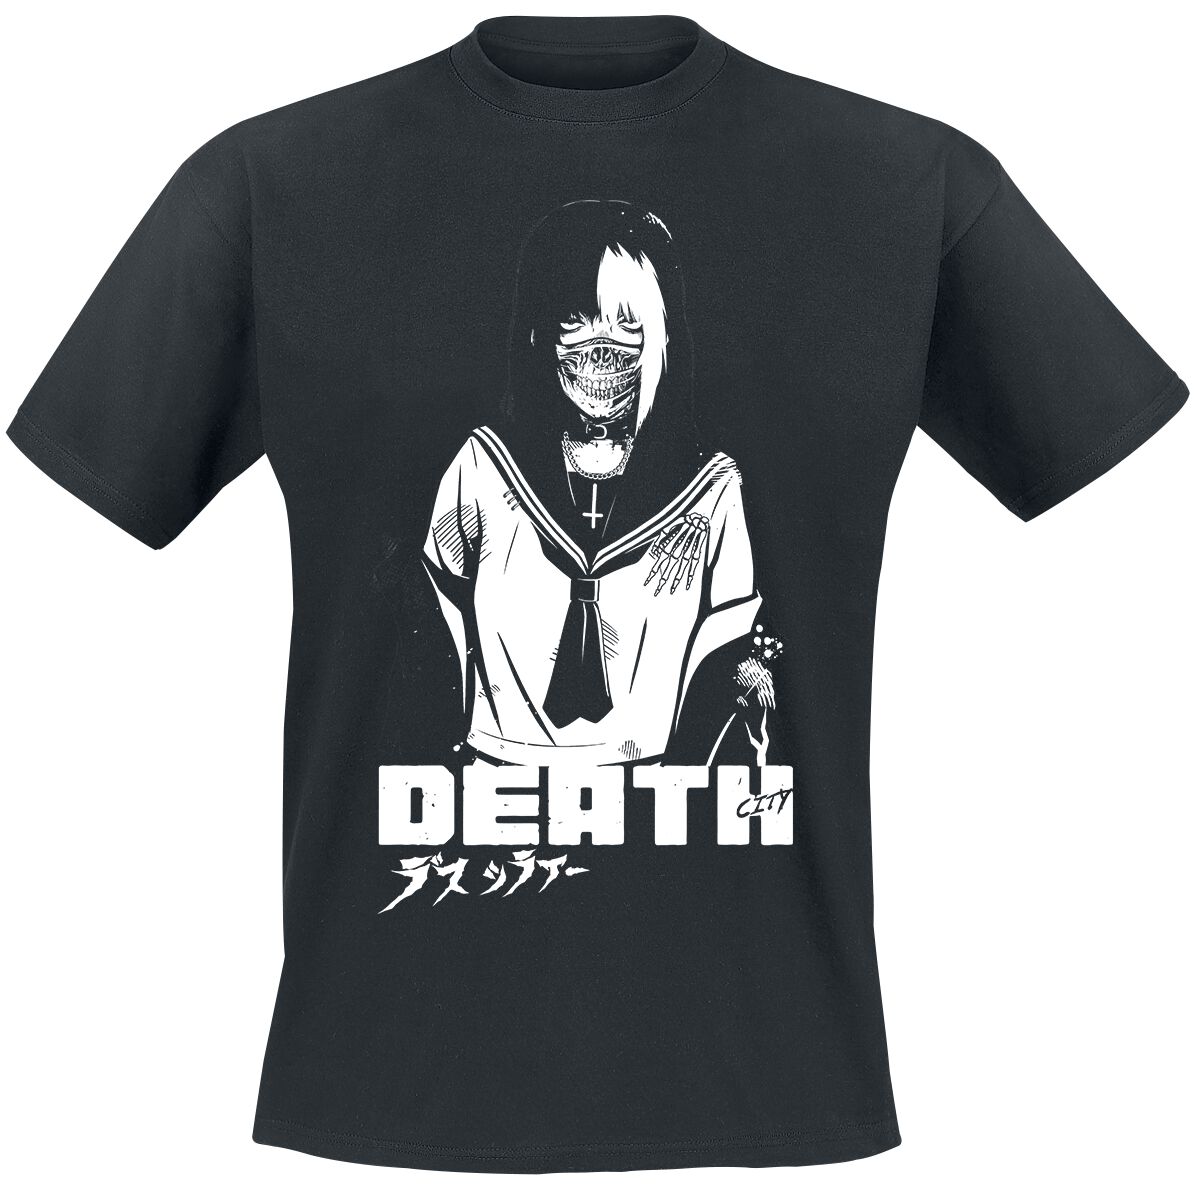 Zombie Makeout Club T-Shirt - ZMC - Death - S bis XXL - für Männer - Größe XXL - schwarz  - Lizenzierter Fanartikel